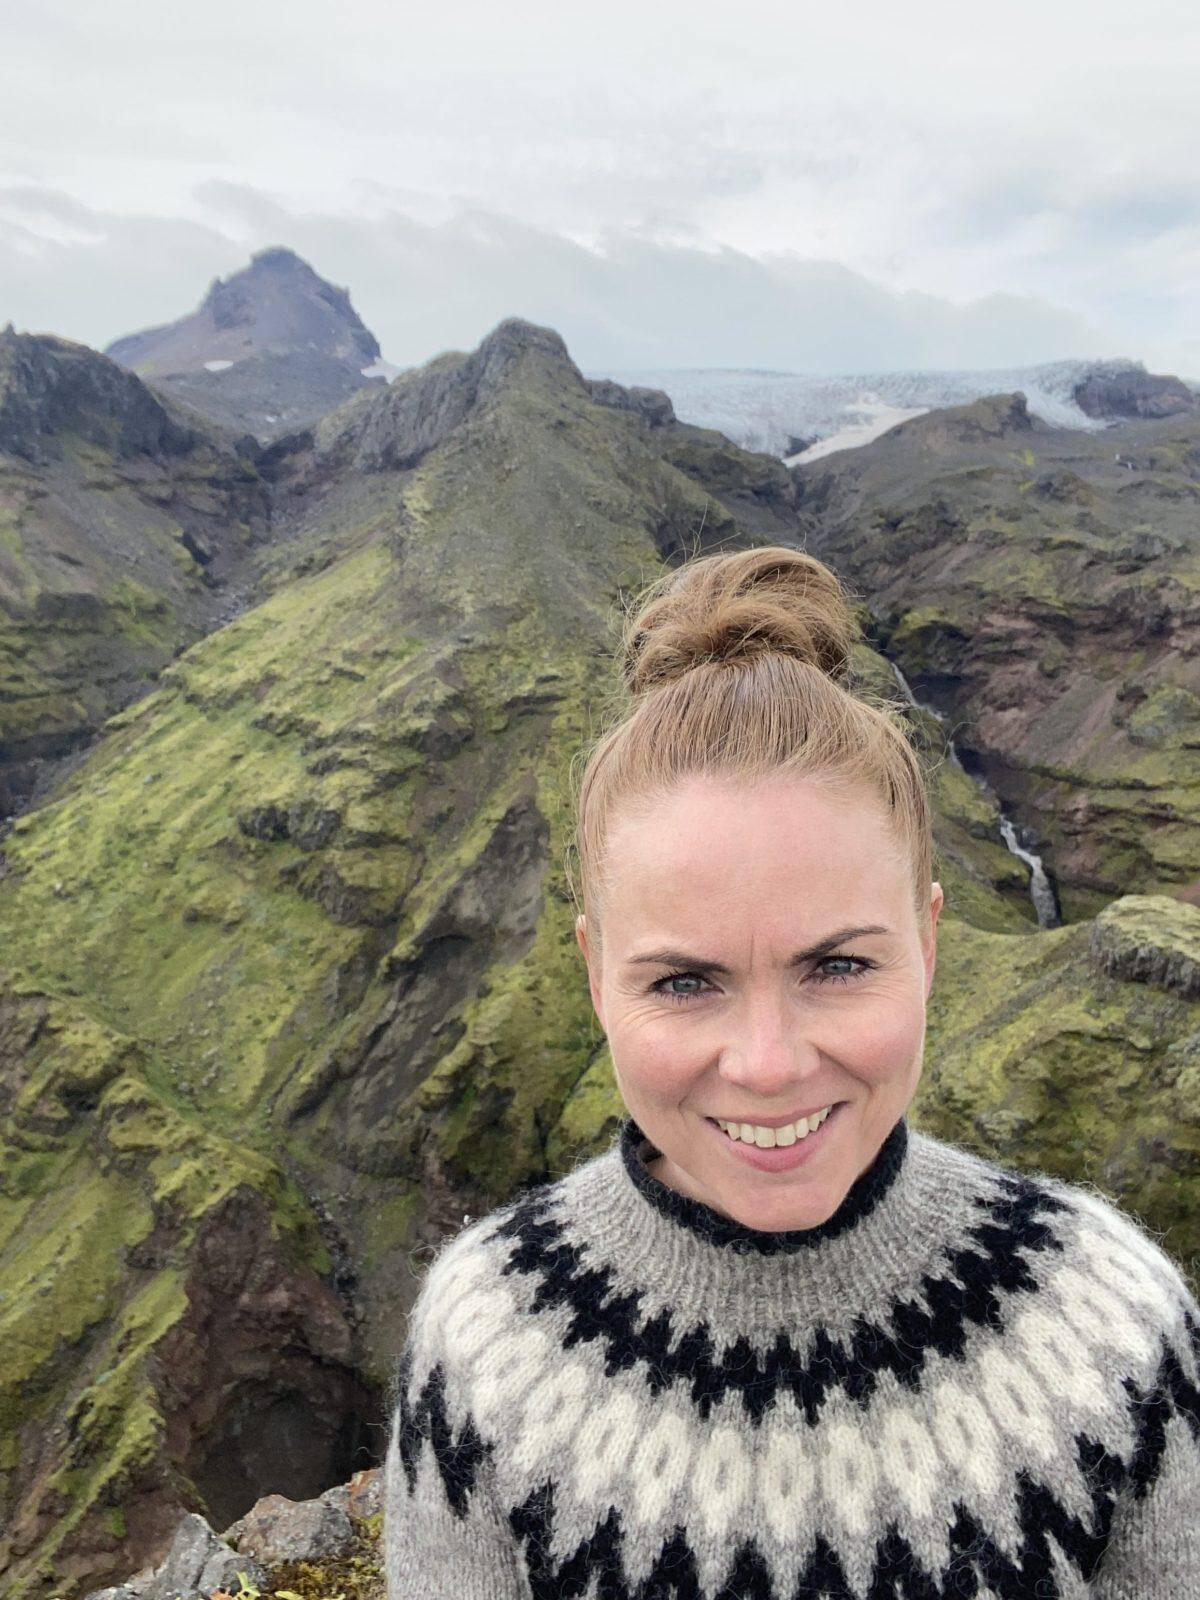 Jórunn Siggadóttir at Múlagljúfur Canyon